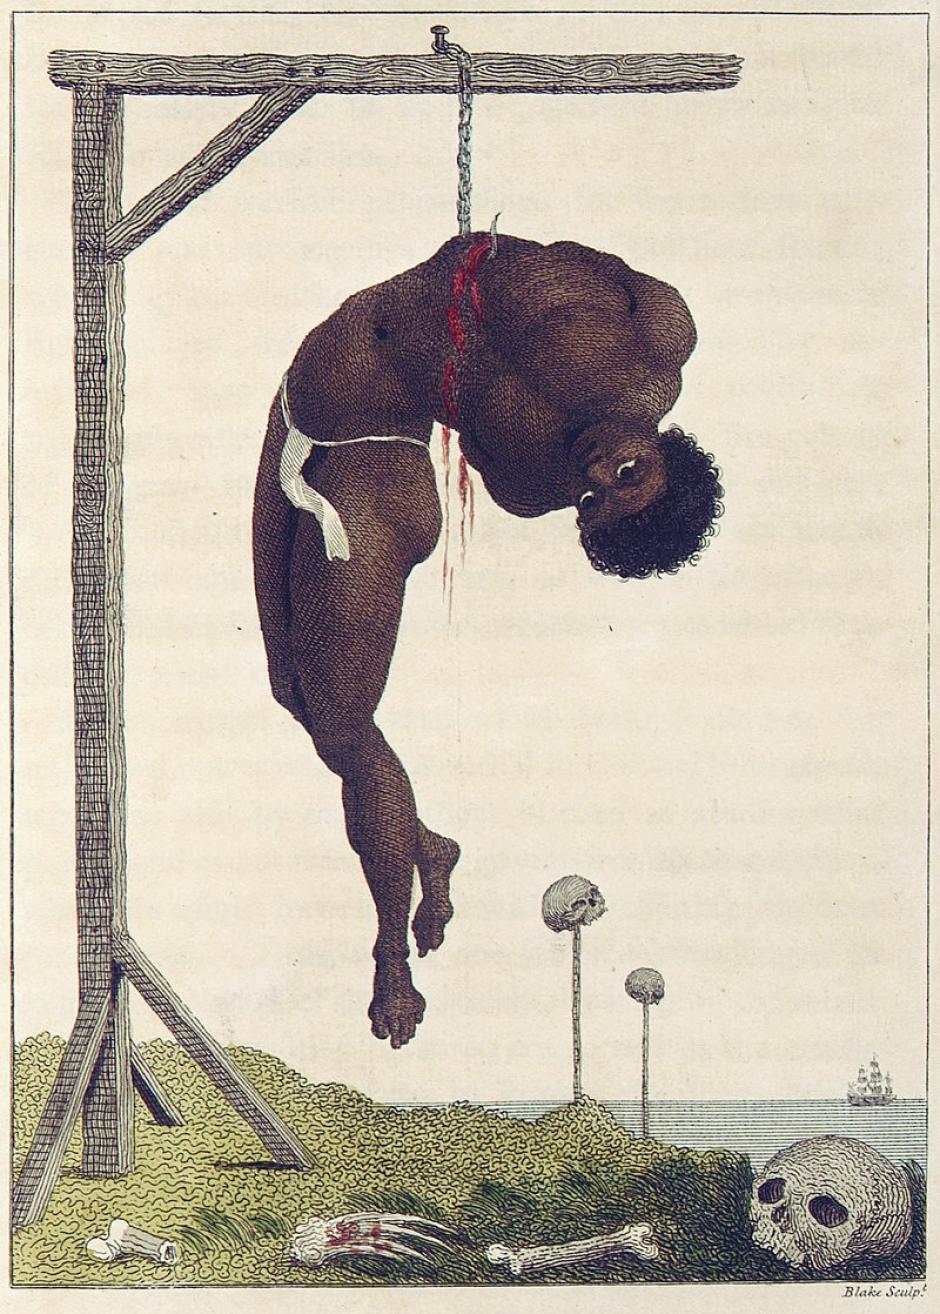 Esclavo pendiendo de un gancho en la Guyana, ilustrado por William Blake